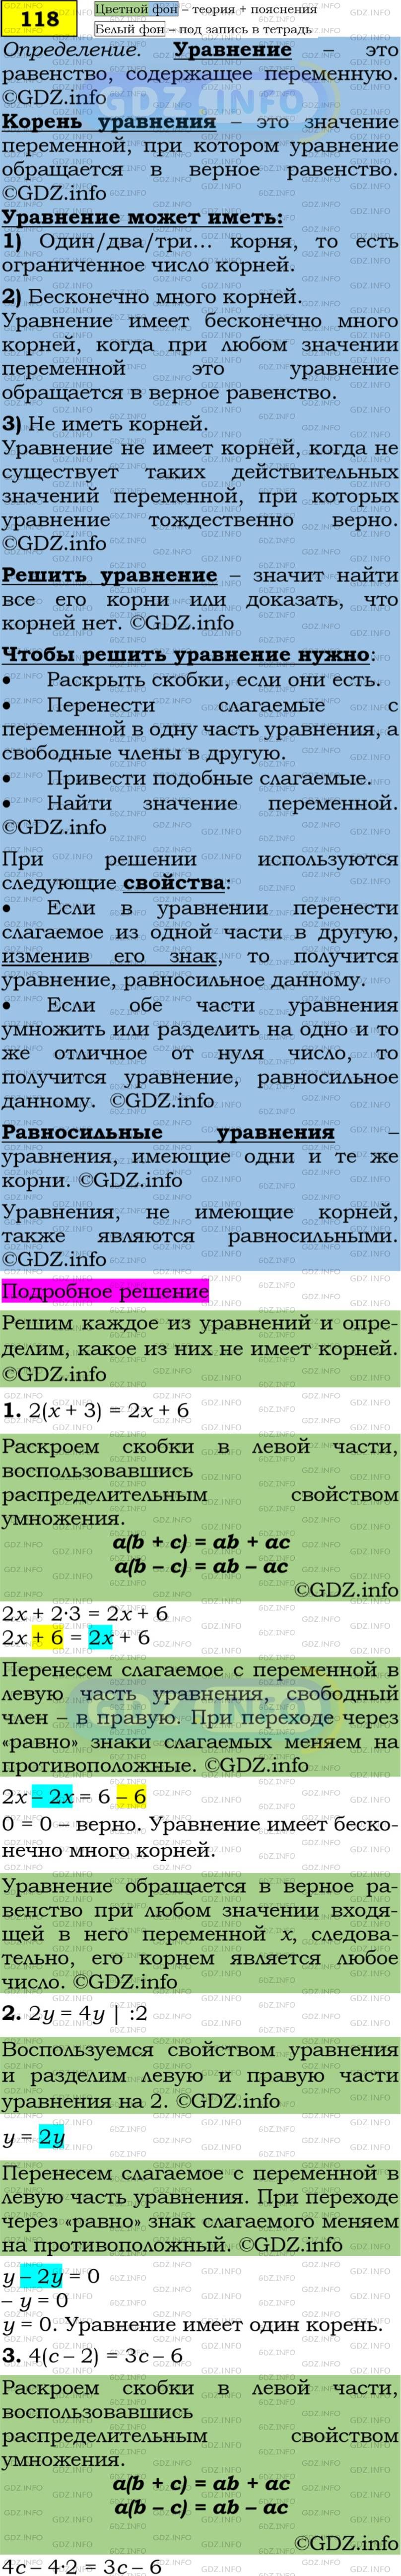 Фото подробного решения: Номер задания №118 из ГДЗ по Алгебре 7 класс: Макарычев Ю.Н.